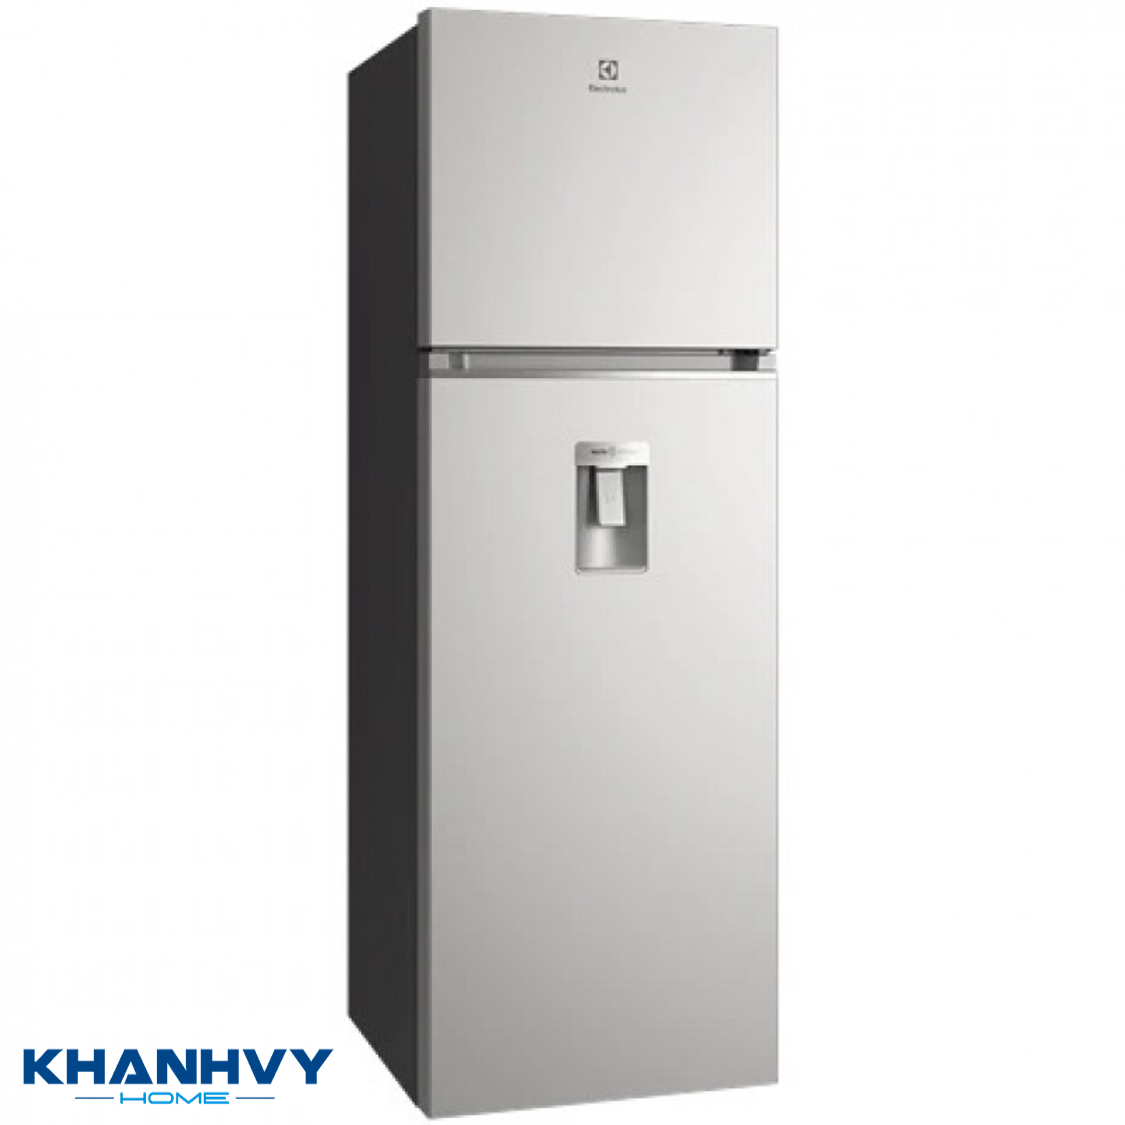 Tủ lạnh Electrolux ETB3740K-A được trang bị nhiều tính năng tiện ích mang lại sự tiện nghi tối ưu cho người dùng